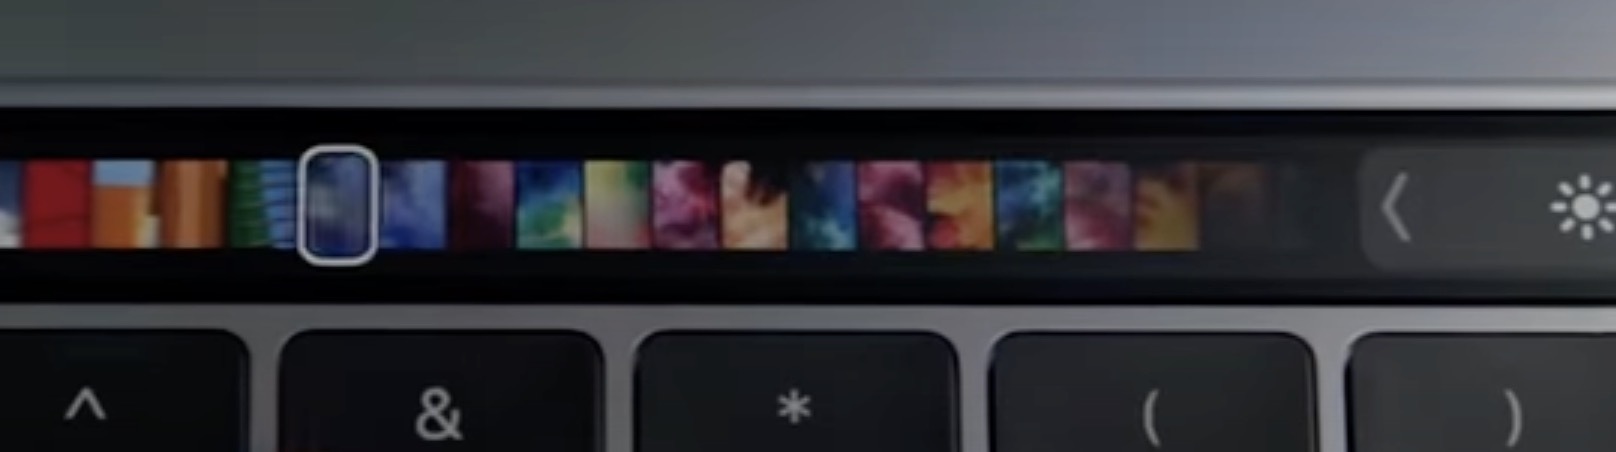 На сайте Apple исчезли MacBook с сенсорной панелью Touch Bar